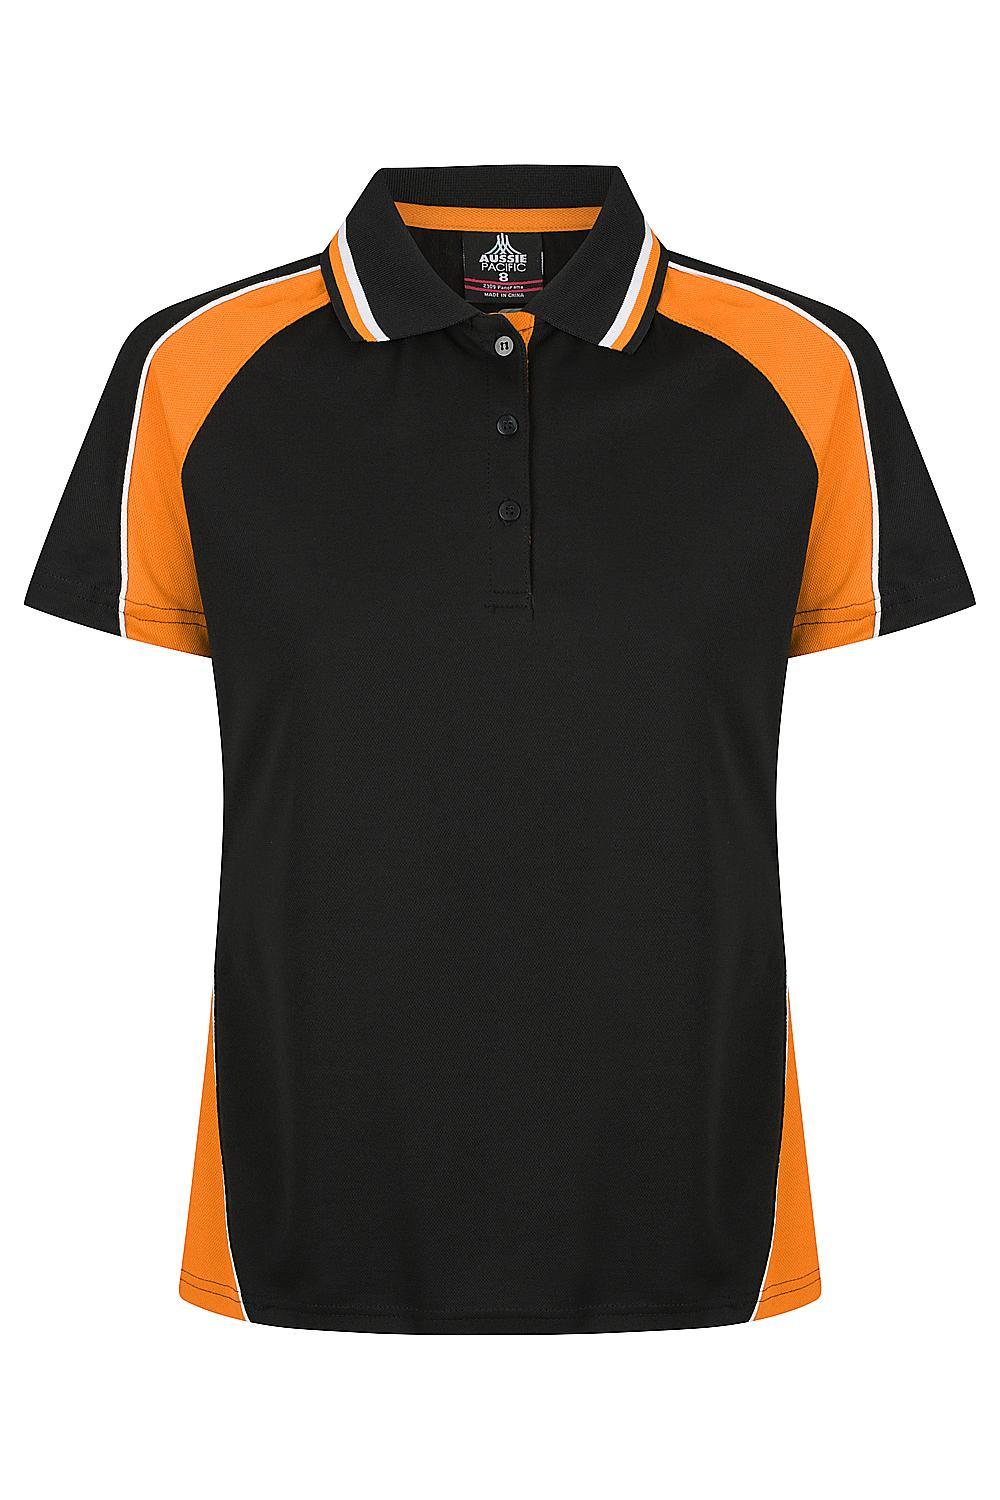 Panorama Ladies Work Shirts - Black/Orange/White